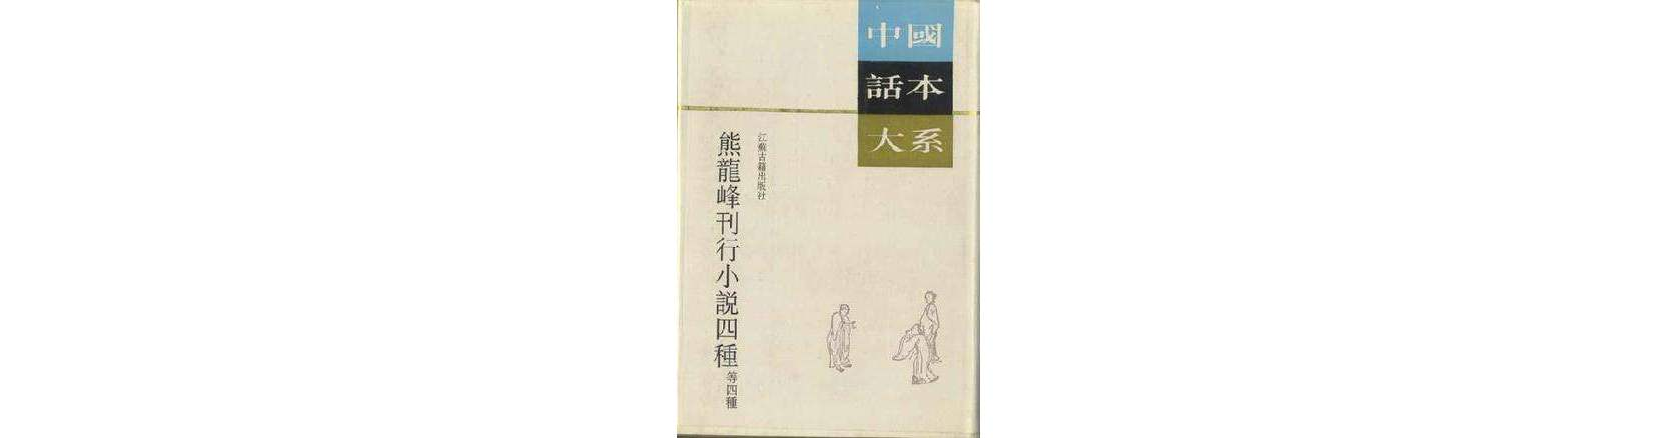 熊龍峰刊行小說四種等四種